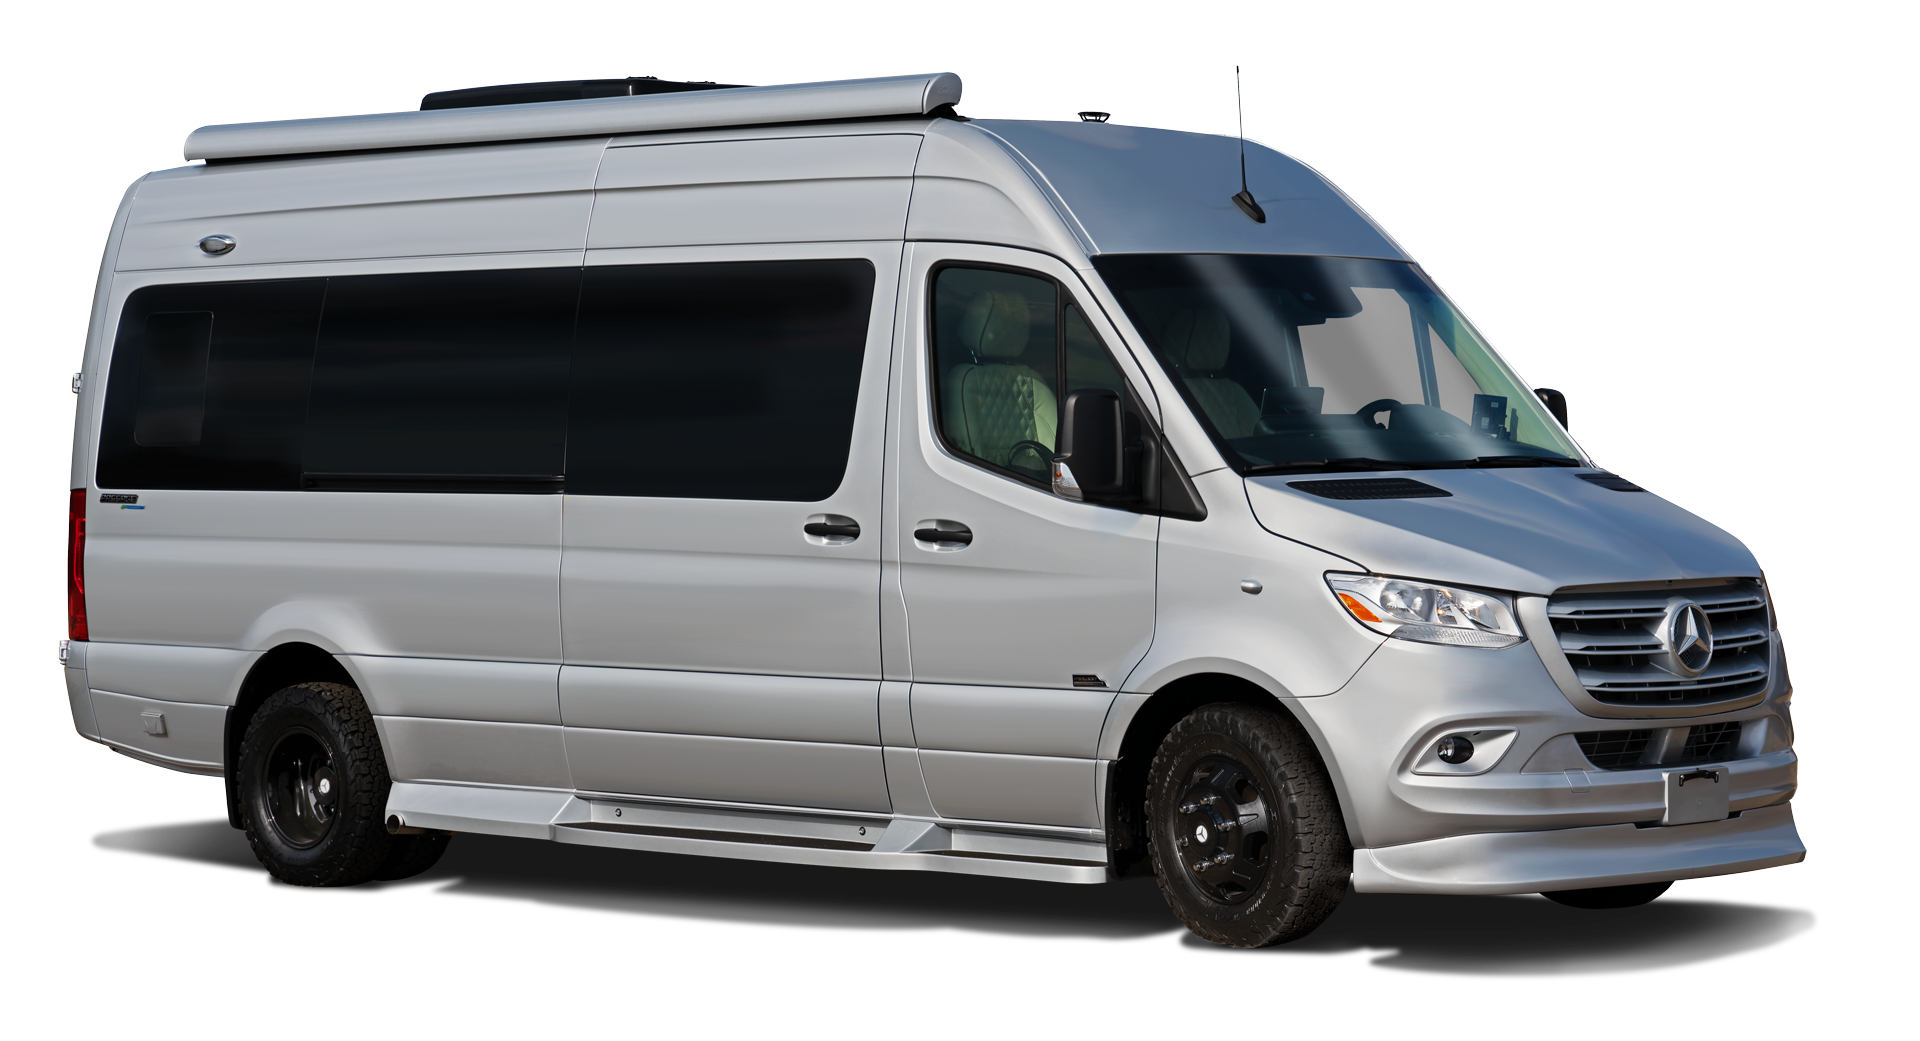 Passage Sprinter RV Camper Van - Midwest Automotive Designs